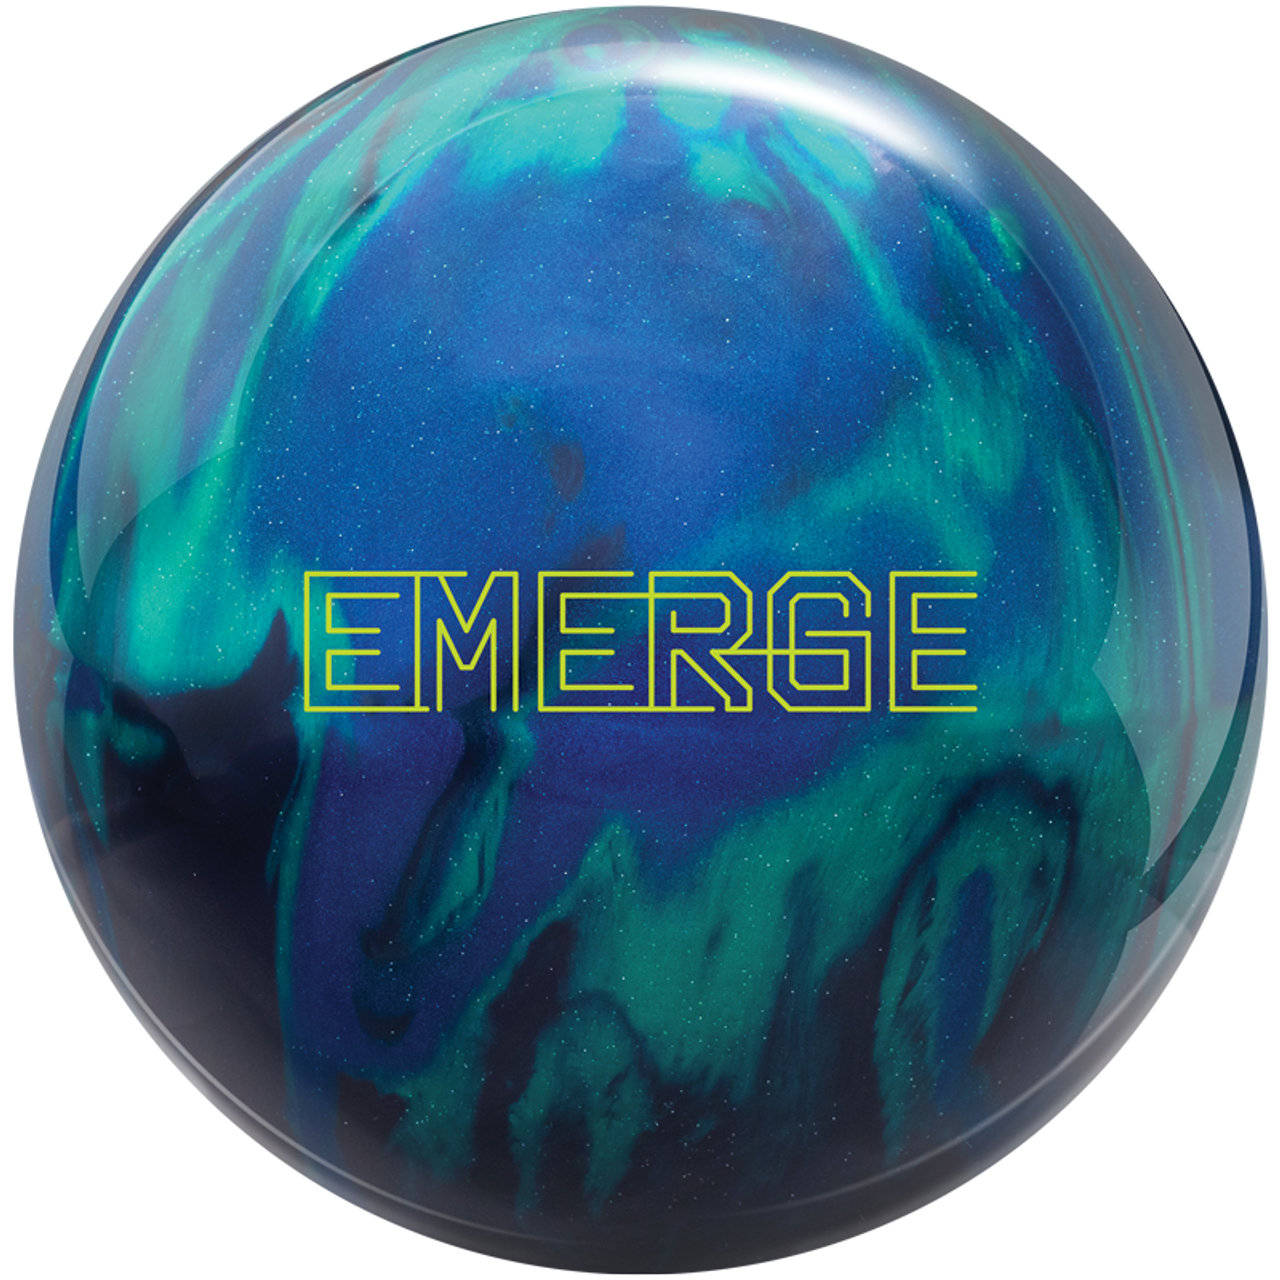 Ebonite Emerge Hybrid Bowling Ball